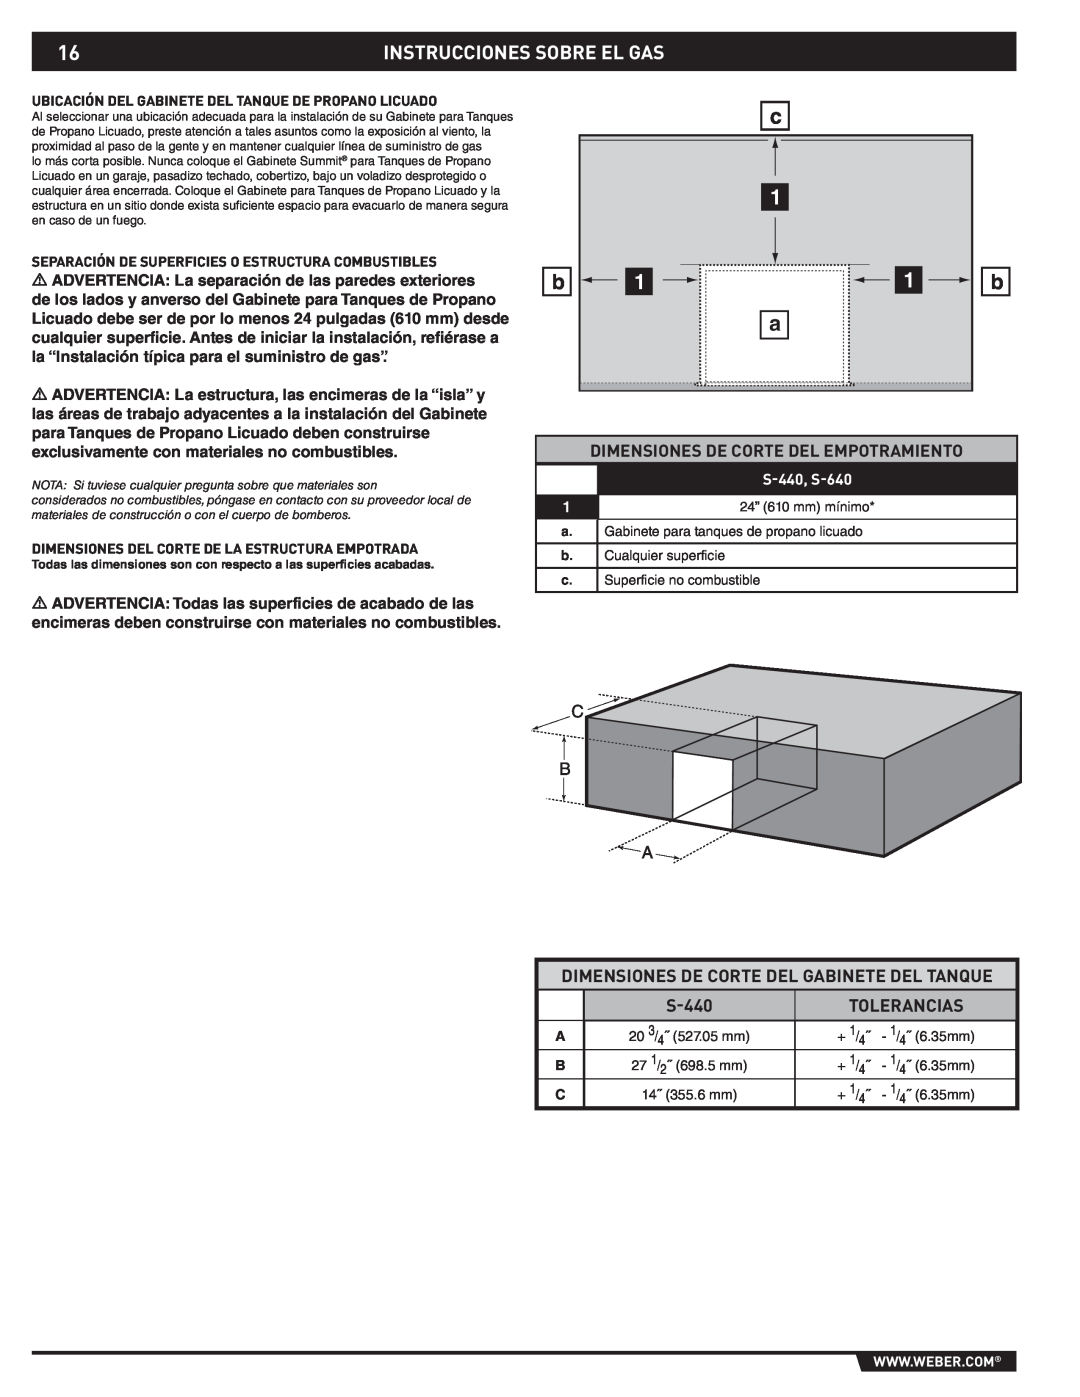 Weber 43176 manual Instrucciones Sobre El Gas, Dimensiones De Corte Del Empotramiento, Tolerancias, S-440, S-640 